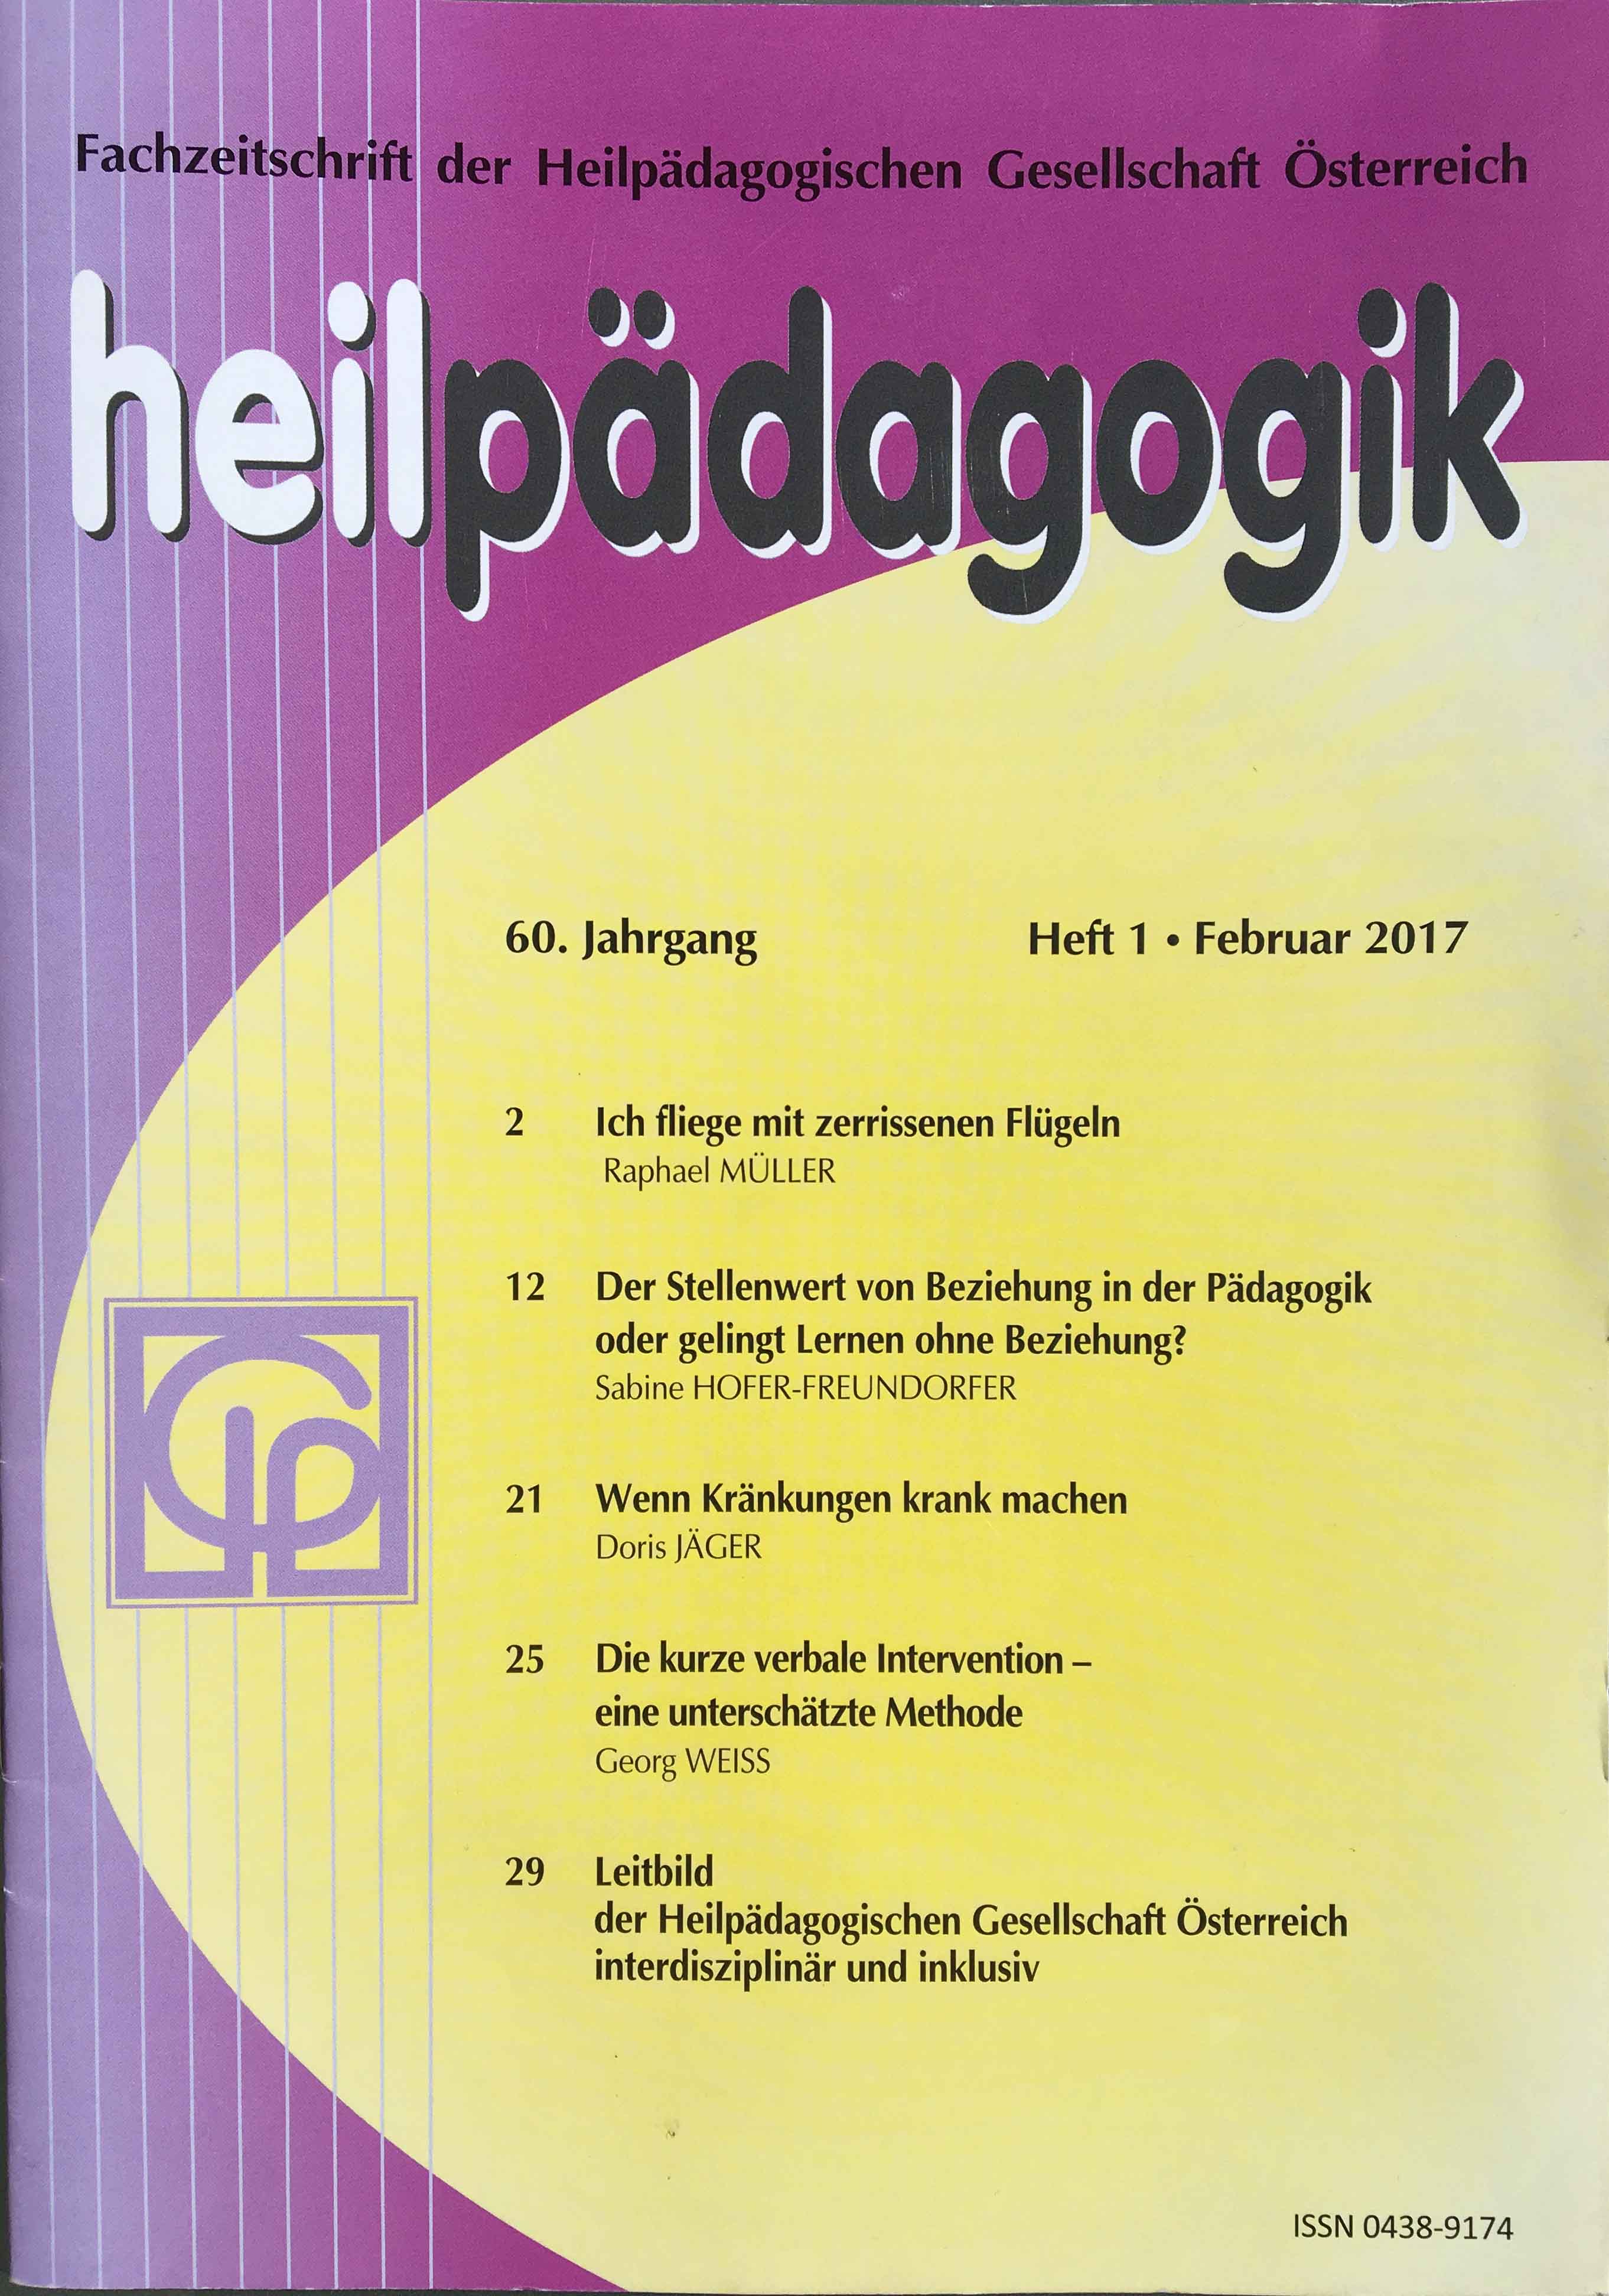 Fachzeitschrift Heilpädagogik